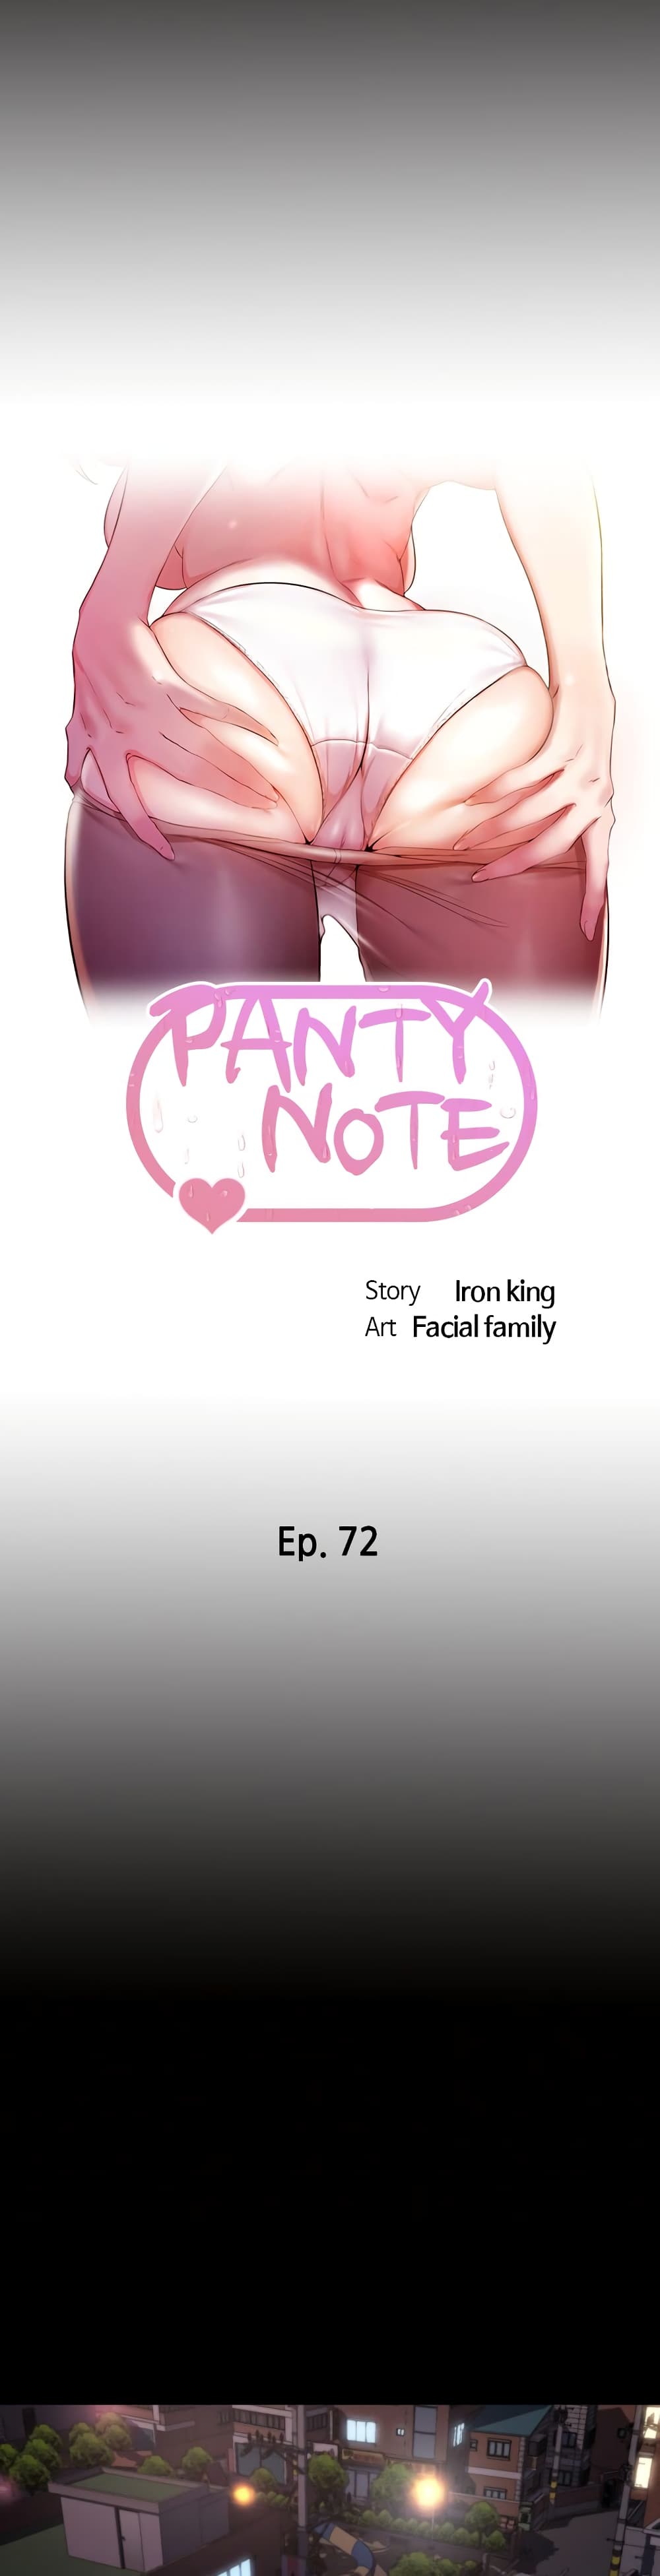 Panty Note01